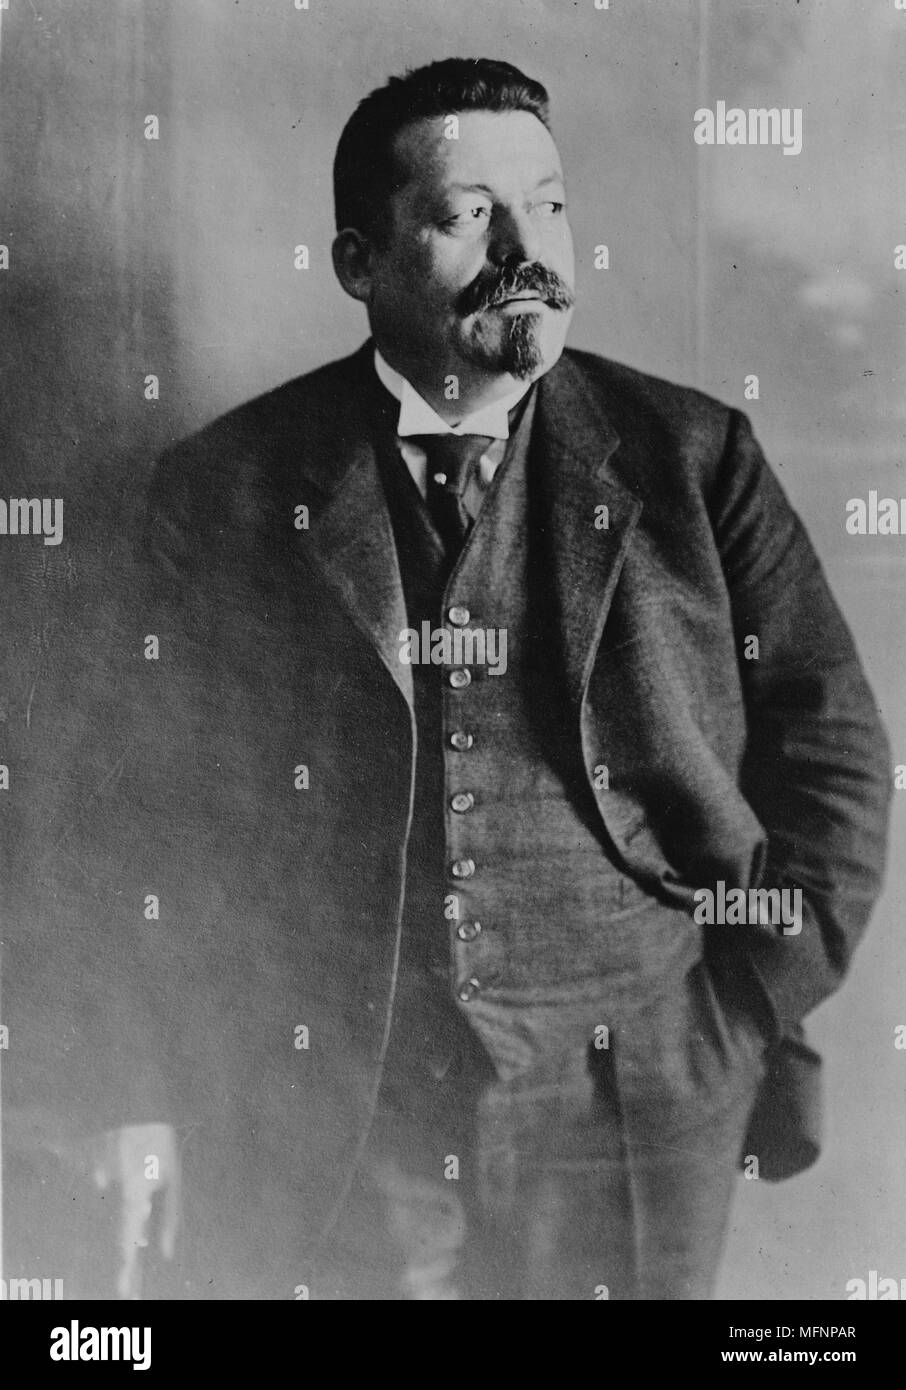 Friedrich Ebert (1871-1925) homme politique allemand (SPD). A été chancelier de l'Allemagne et son premier président pendant la période de Weimar. Photo Février 1921. Banque D'Images